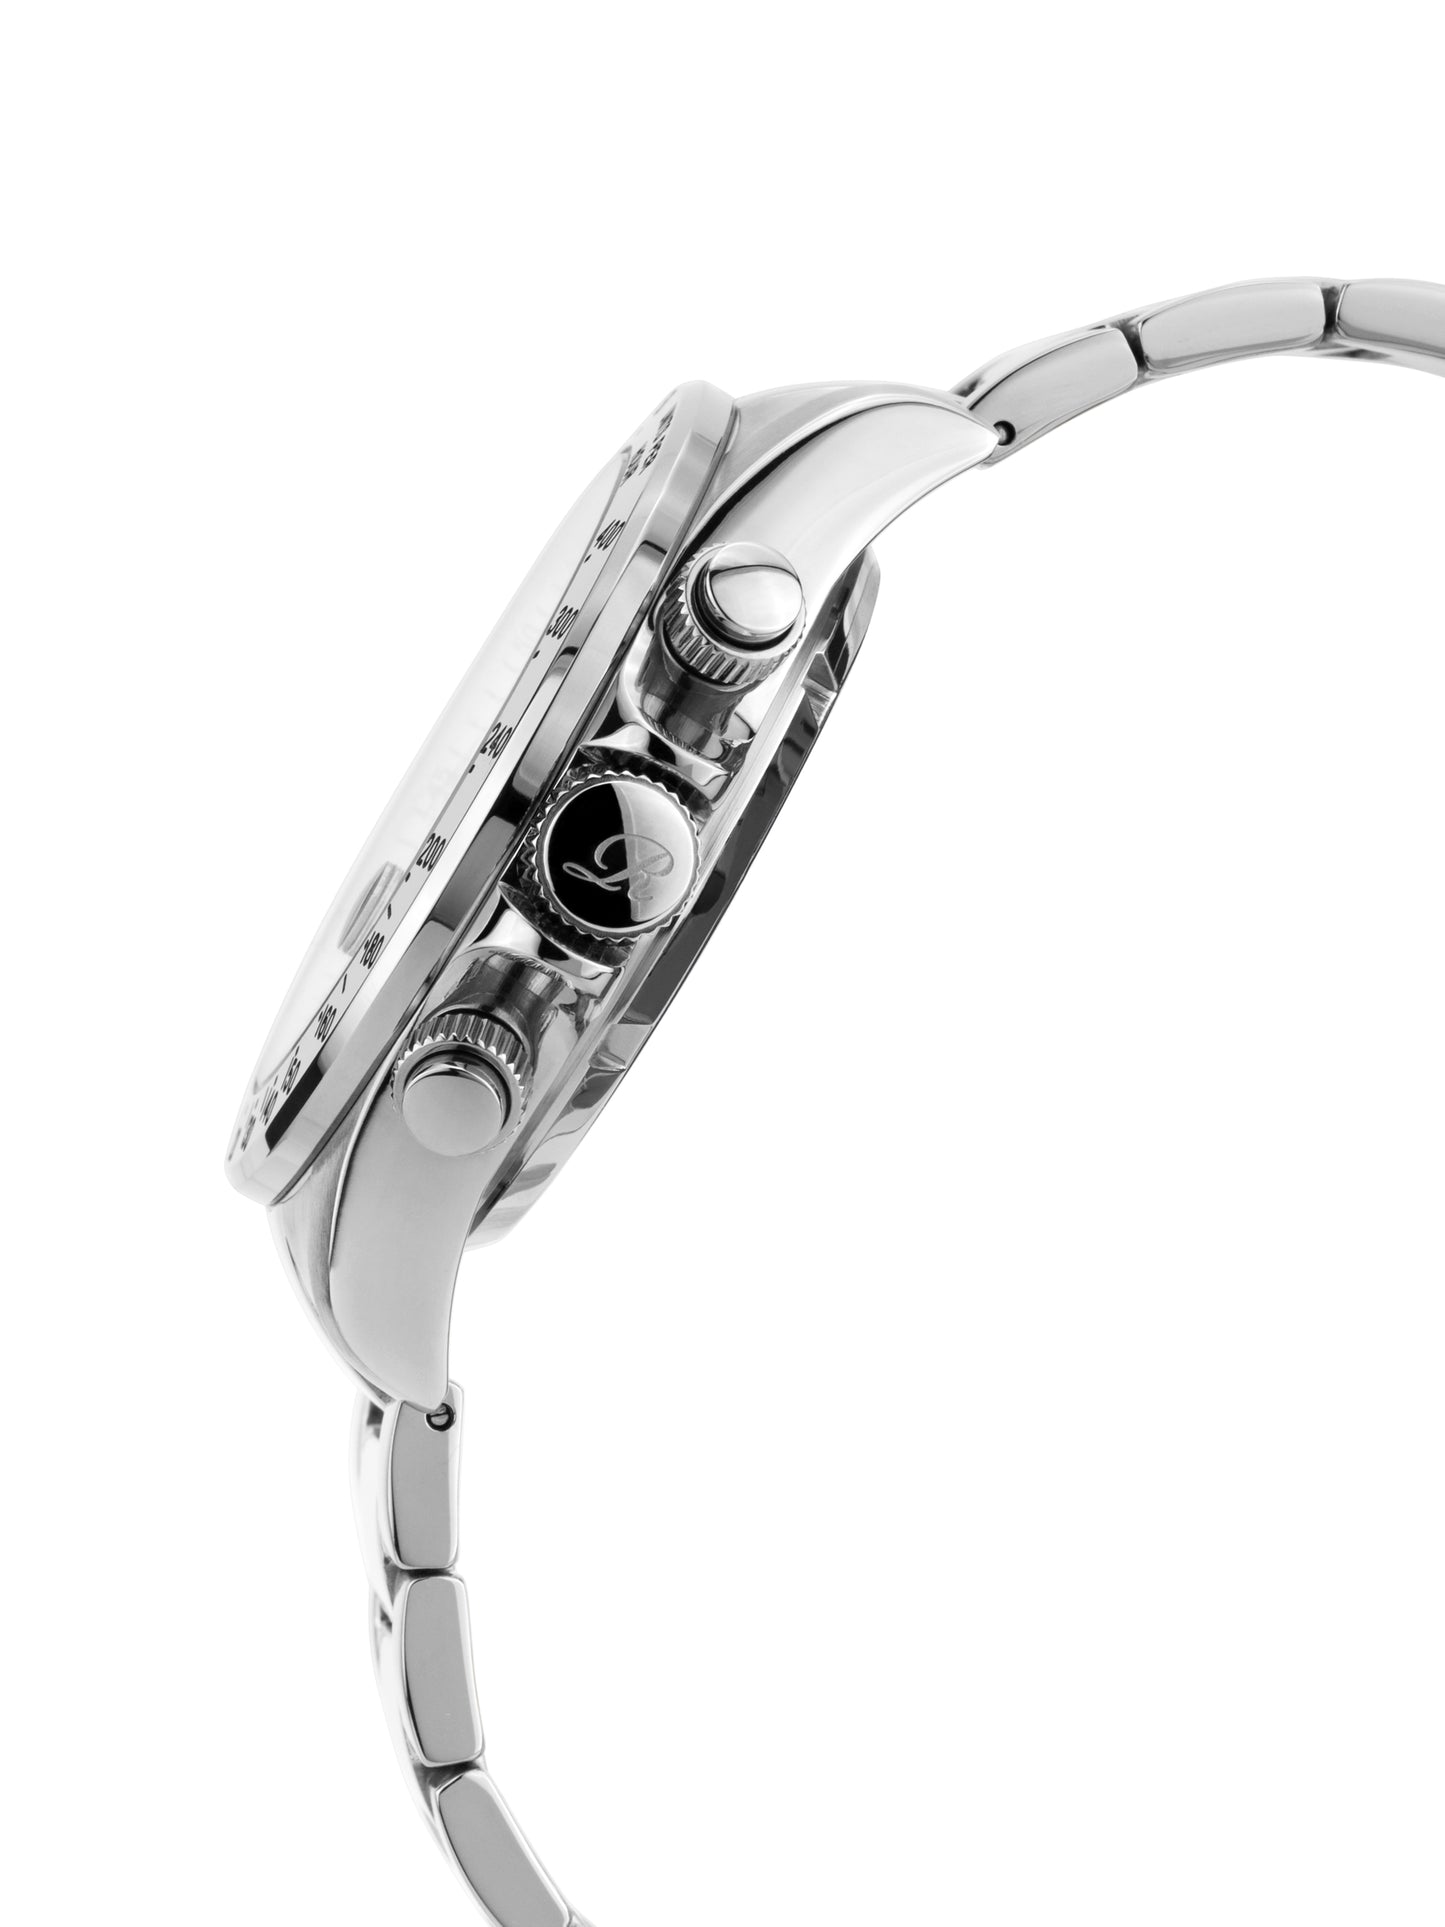 Automatic watches — Fastpace — Richtenburg — steel silver